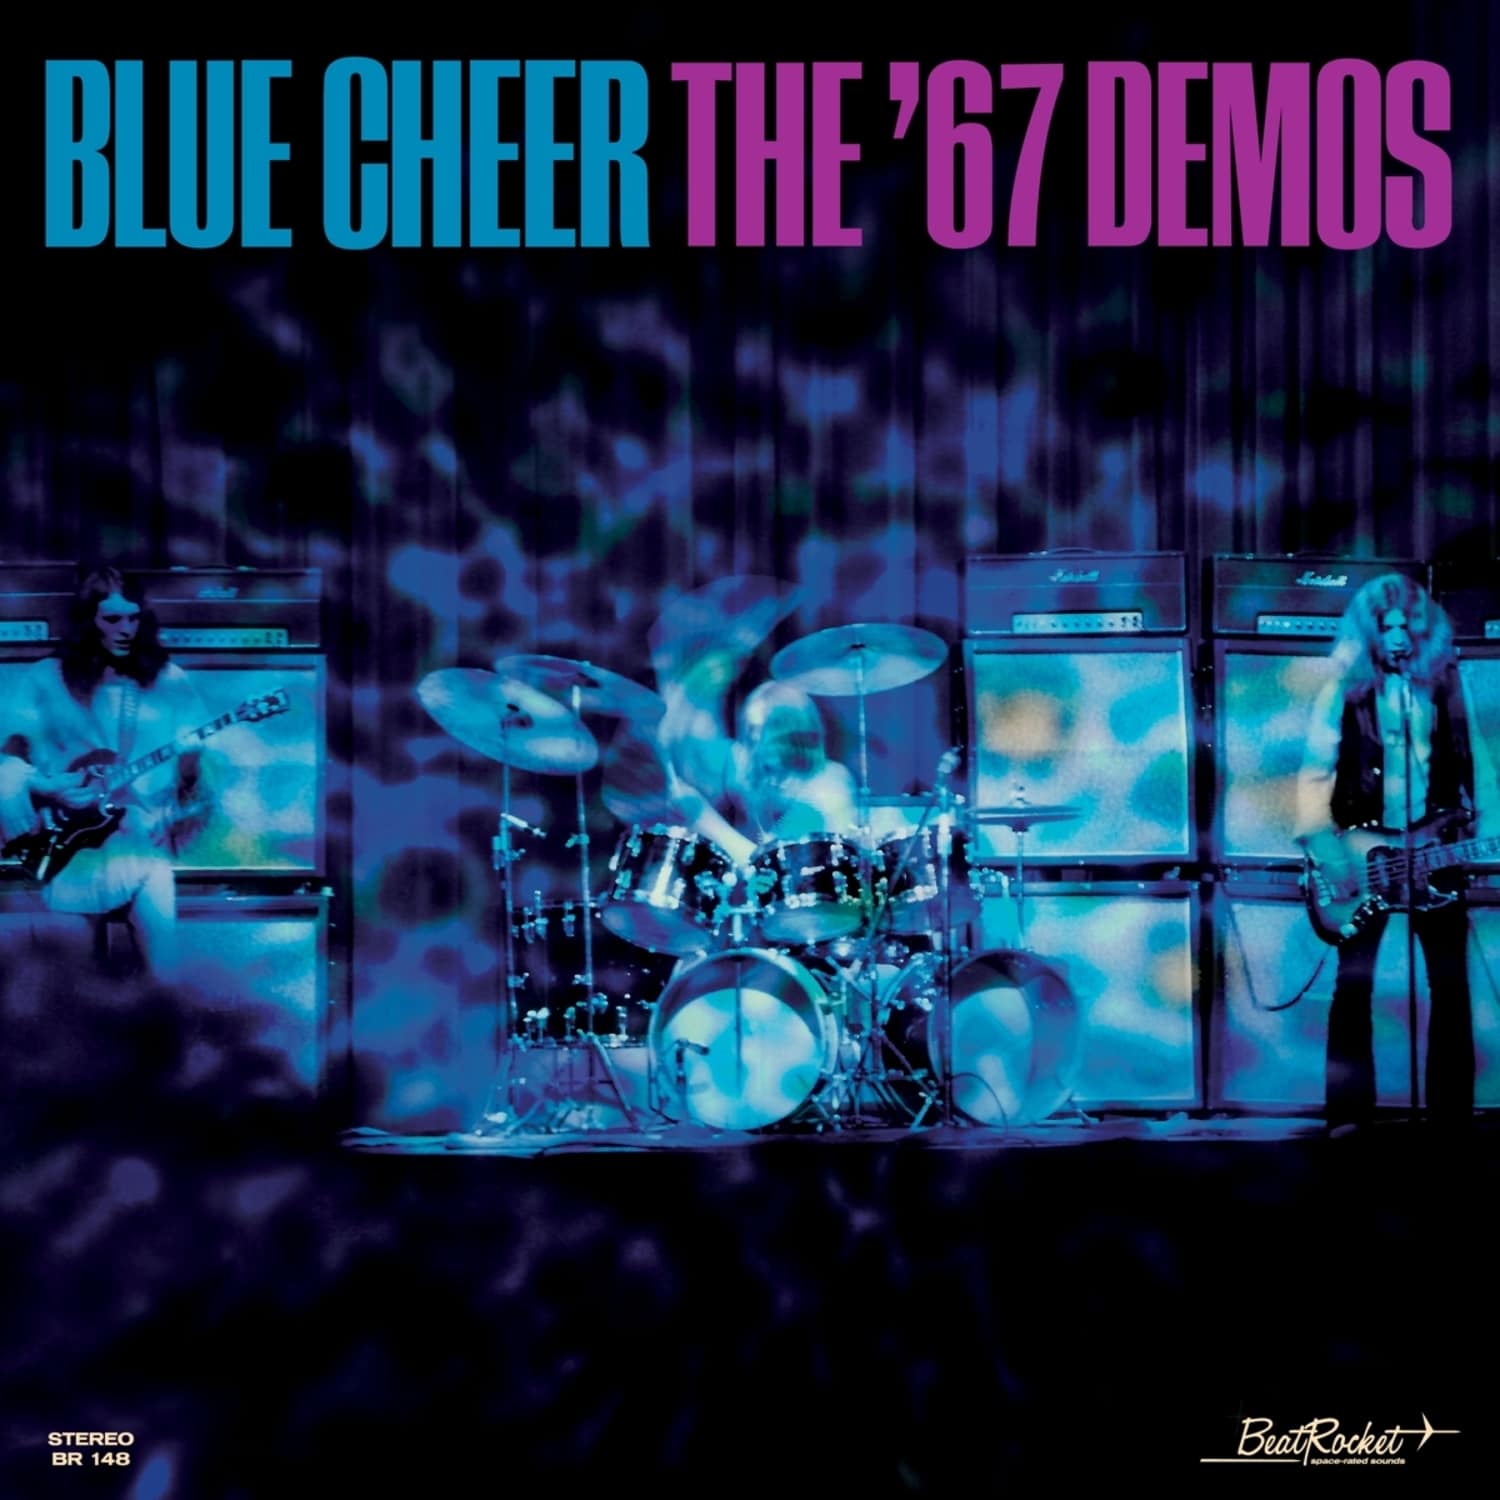 Blue Cheer - THE 67 DEMOS 